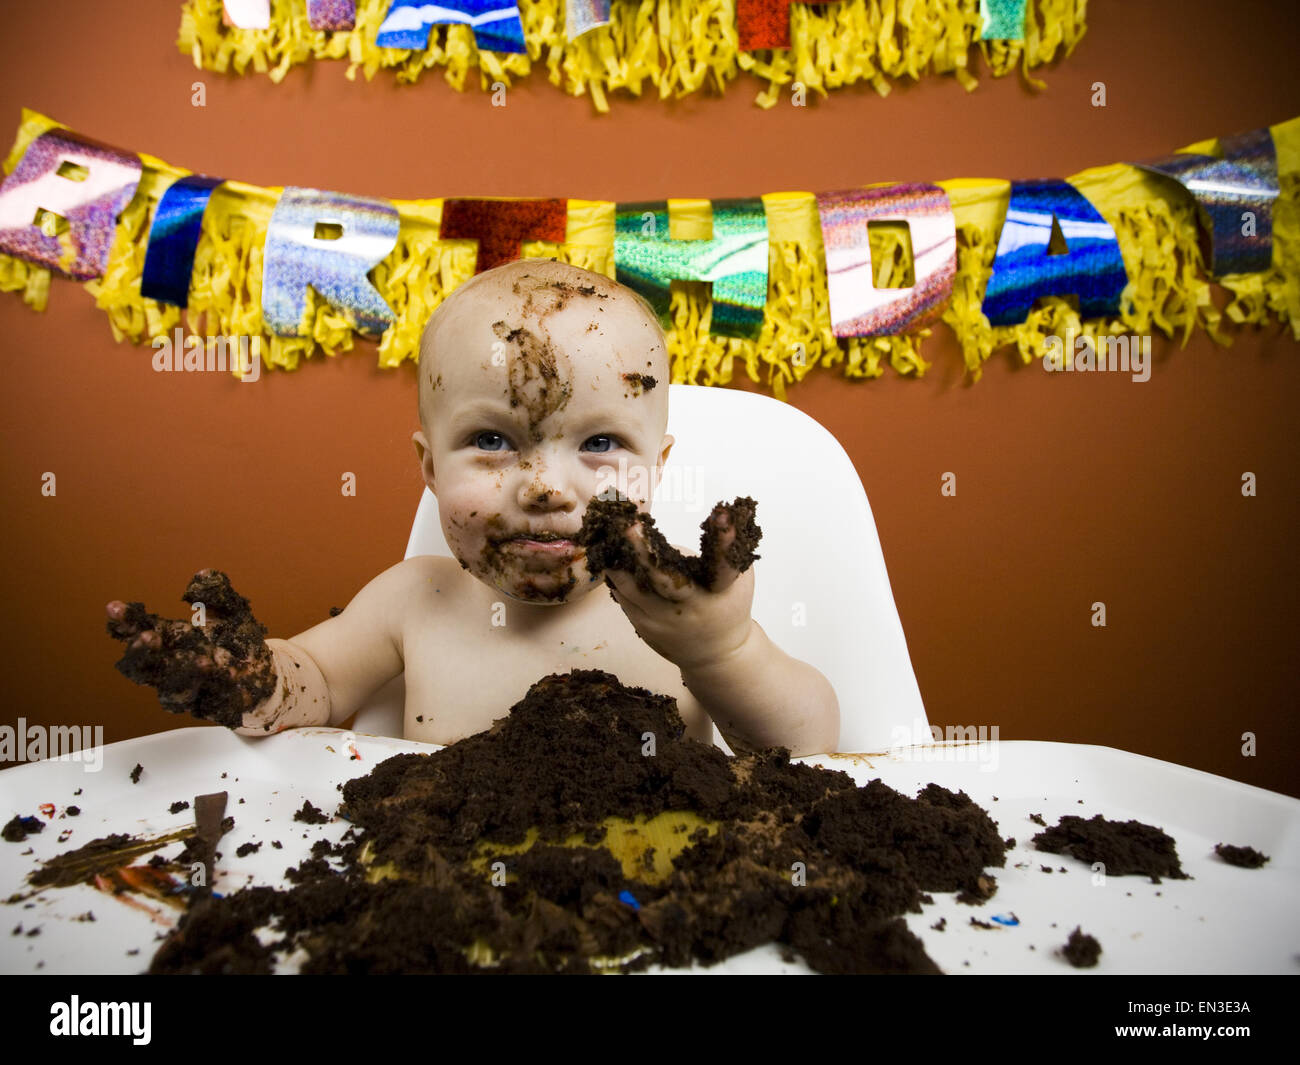 Baby eating birthday cake Stock Photo